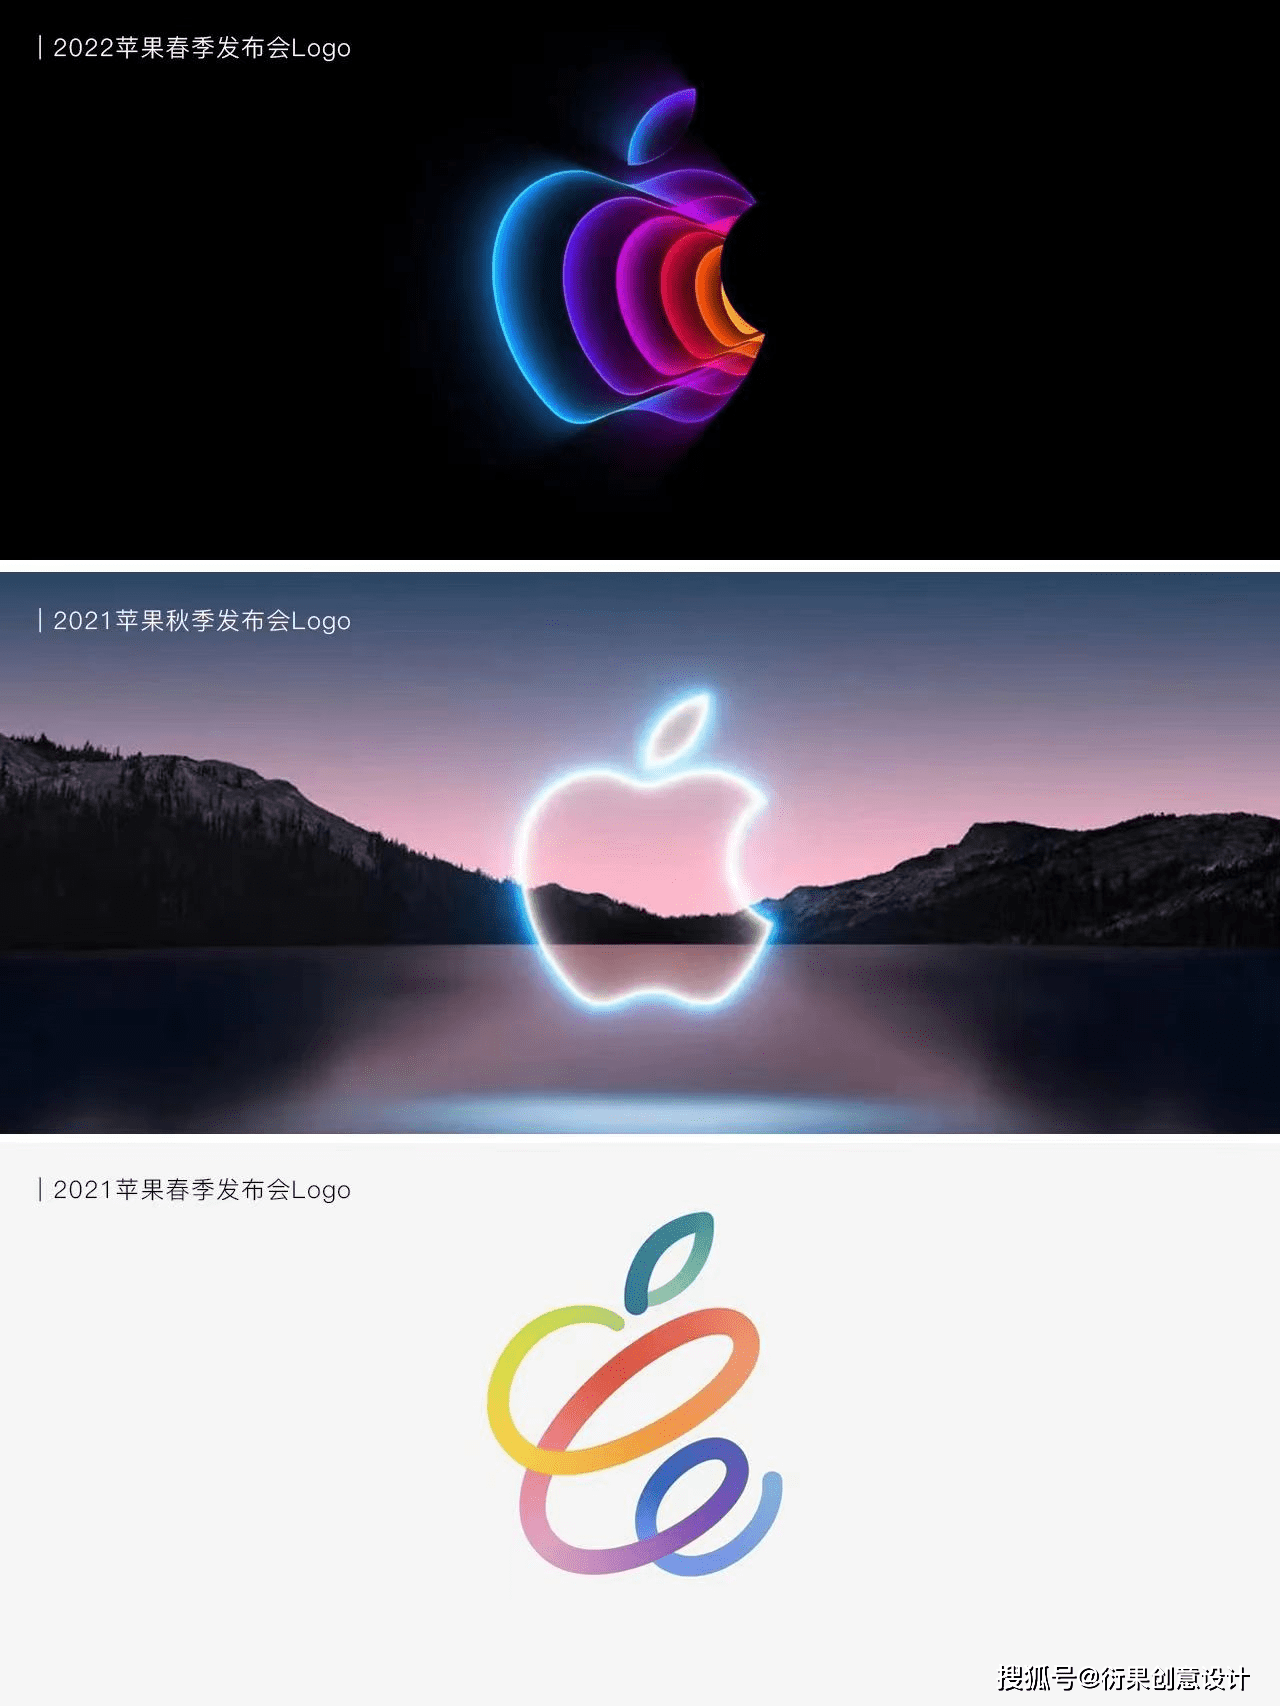 苹果2023秋季发布会logo亮相,流沙般五彩斑斓的黑真很nice!